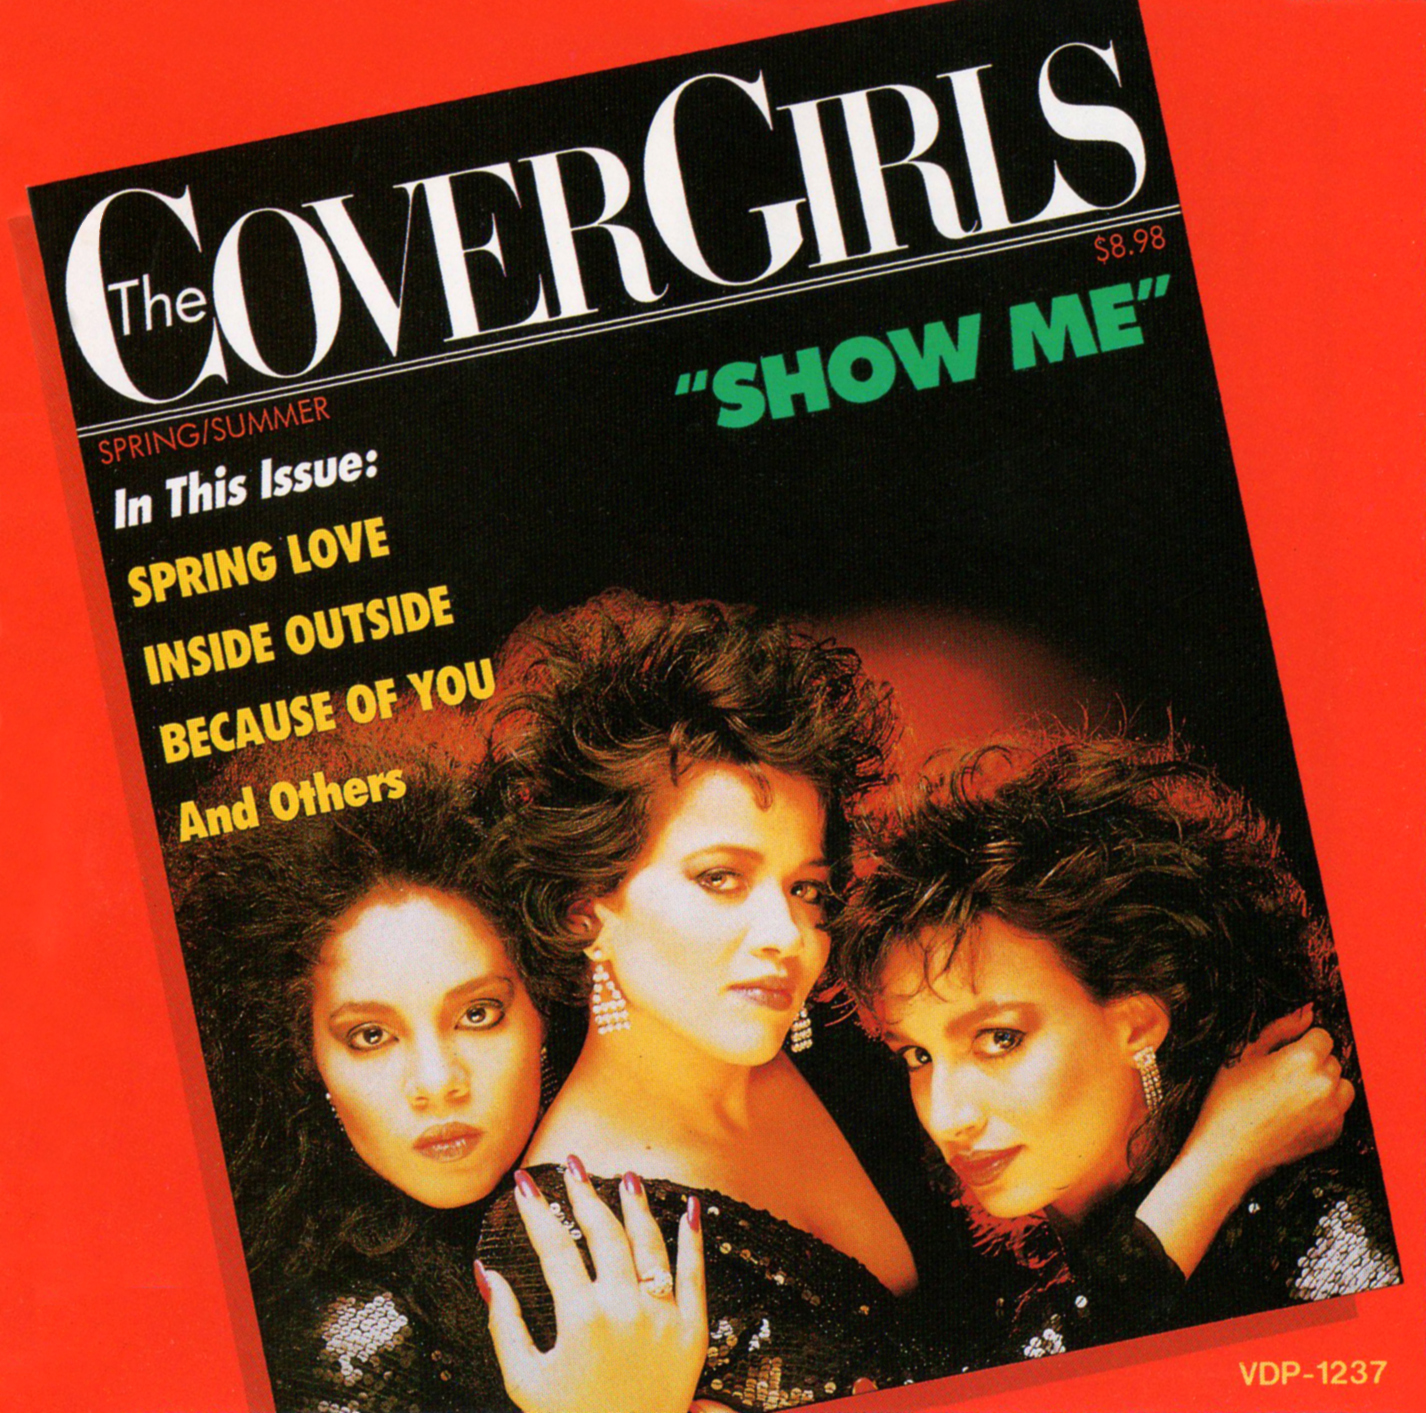 大人気の カバー ガールズ THE COVER GIRLS ショウ ミー SHOW ME 森川由加里がカバー 1987 日本盤 国内盤  7インチシングルレコード EP 45